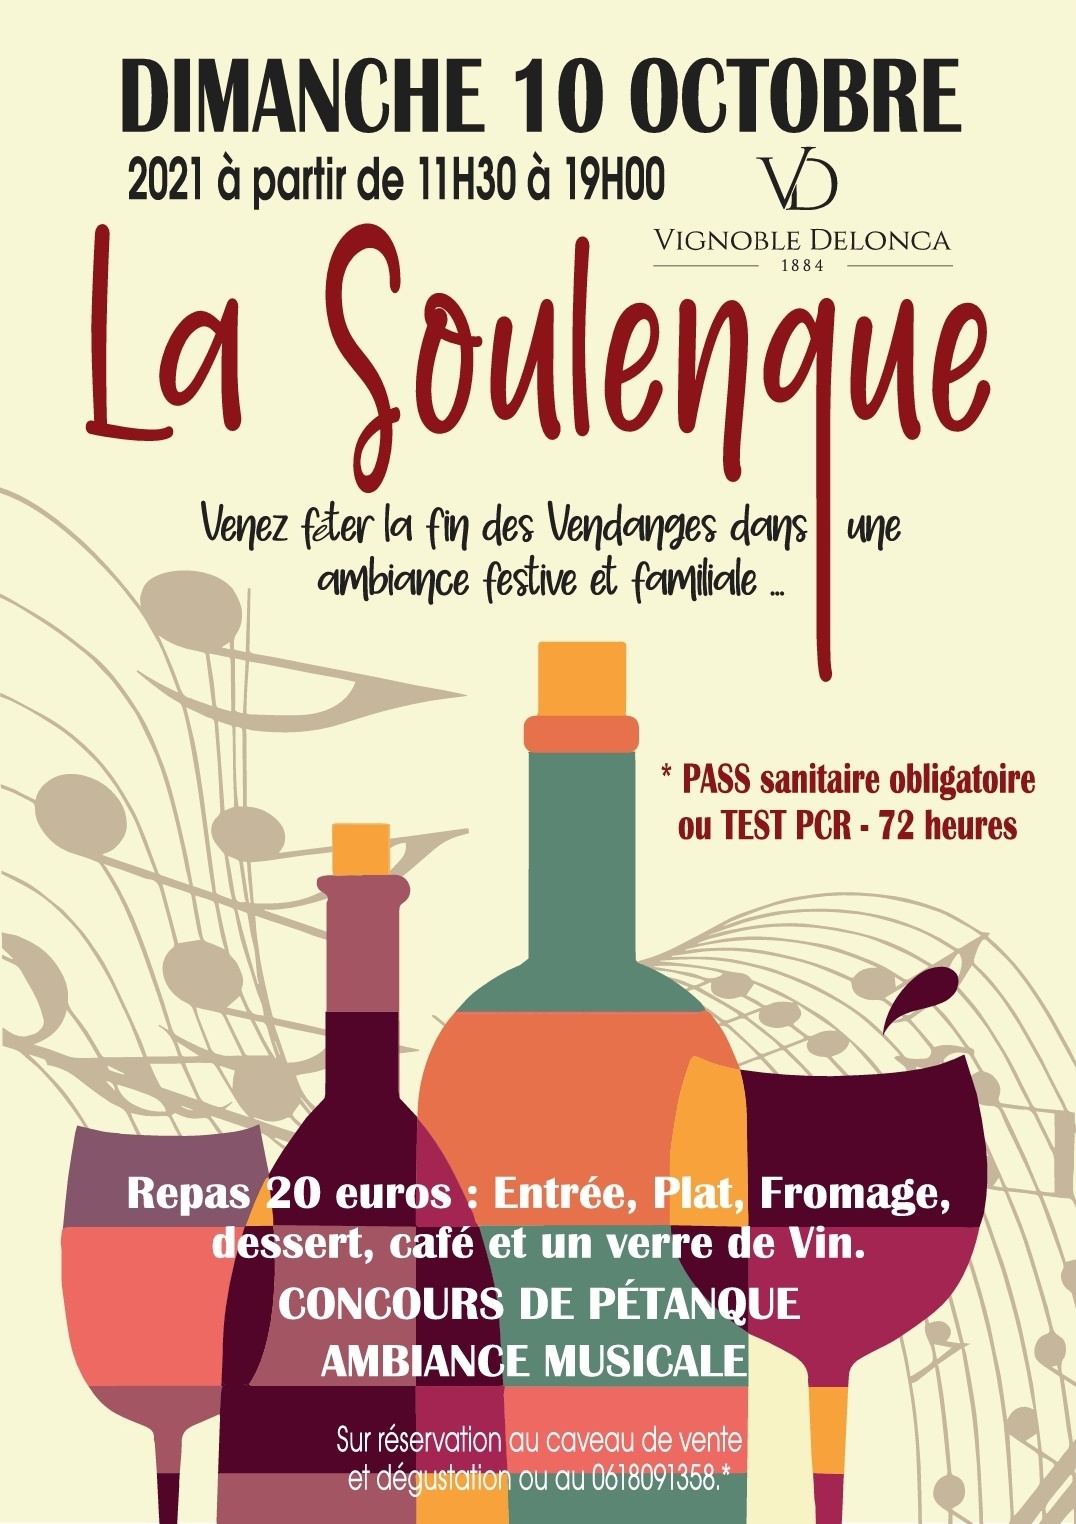 You are currently viewing Vignoble Delonca : 7e édition de la Soulenque